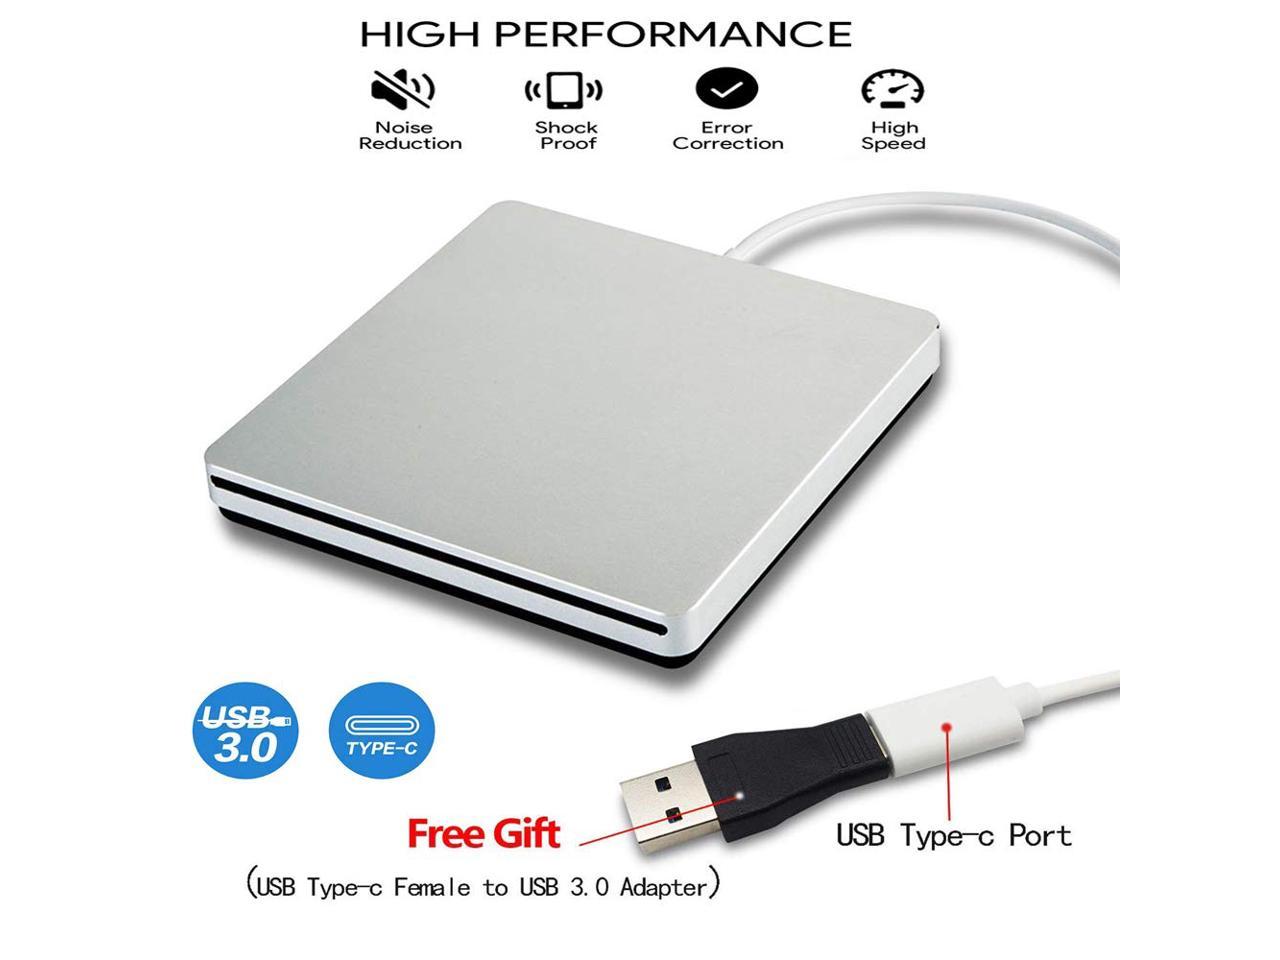 macbook air external hard drive not mounted